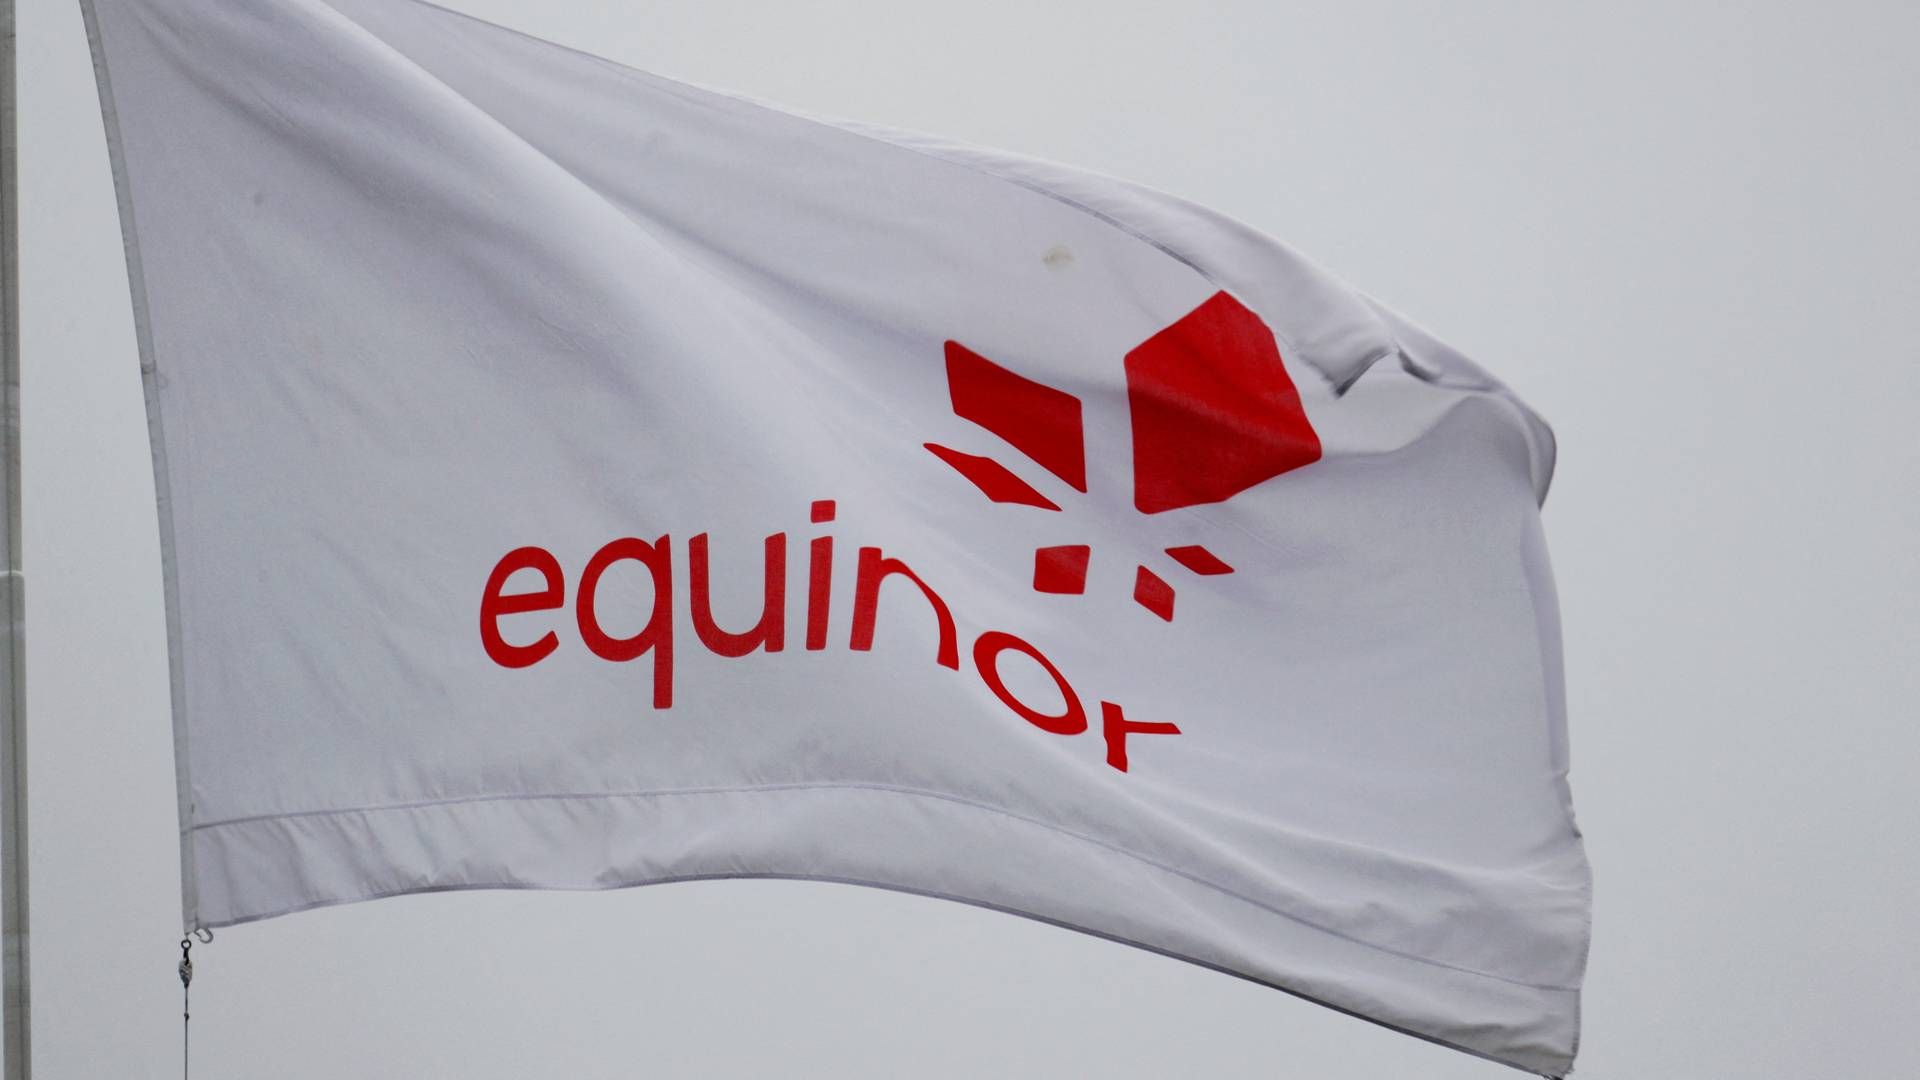 Norske Equinors flag vajer ved hovedkvarteret i Stavanger. Selskaber et en sammenslutning af det tidligere Statoil og Norsk Hydro. | Photo: INTS KALNINS/REUTERS / X02120